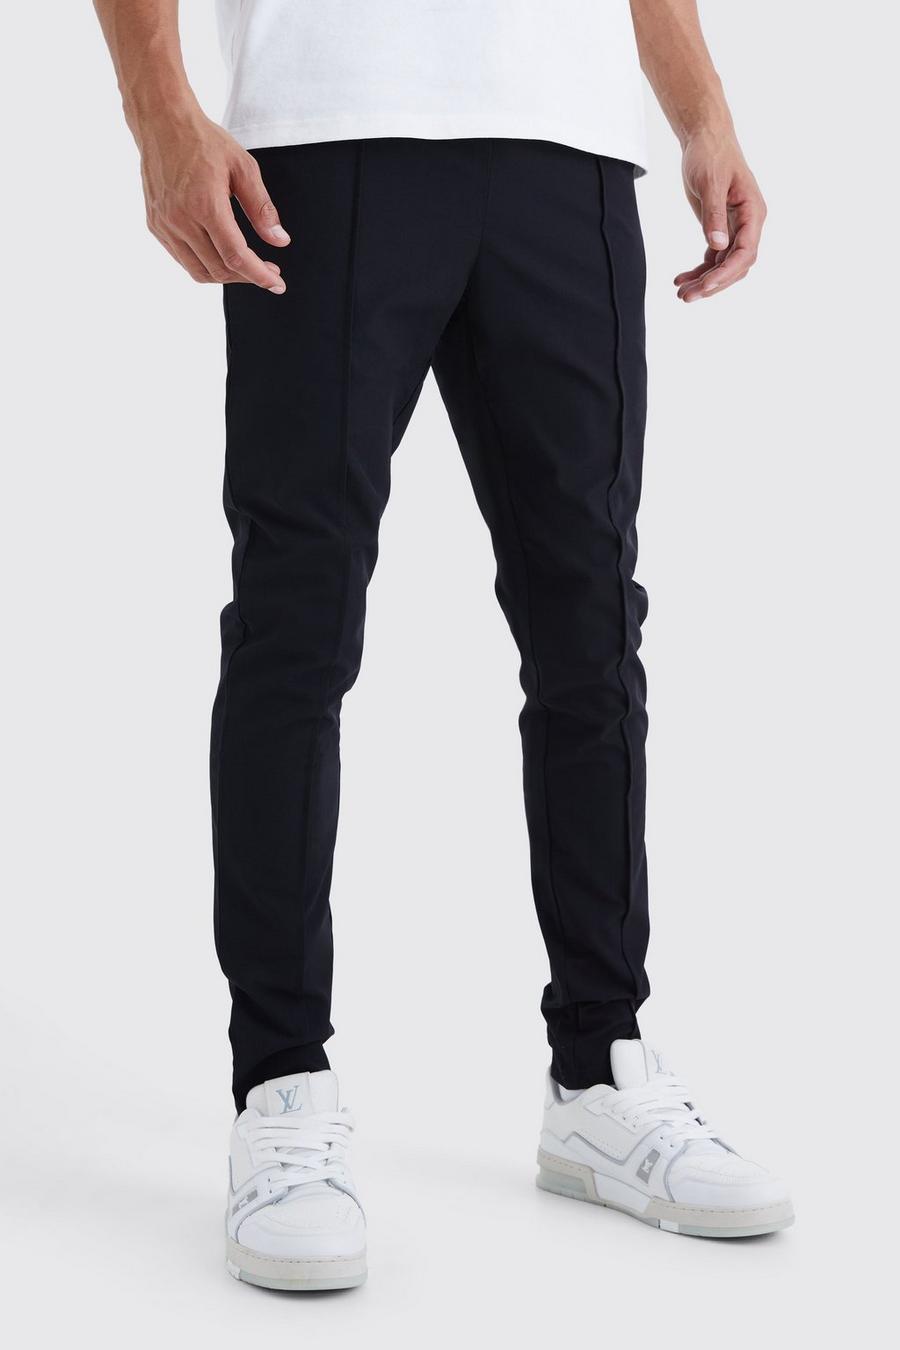 Pantaloni Tall in Stretch leggero elasticizzato con nervature, Black